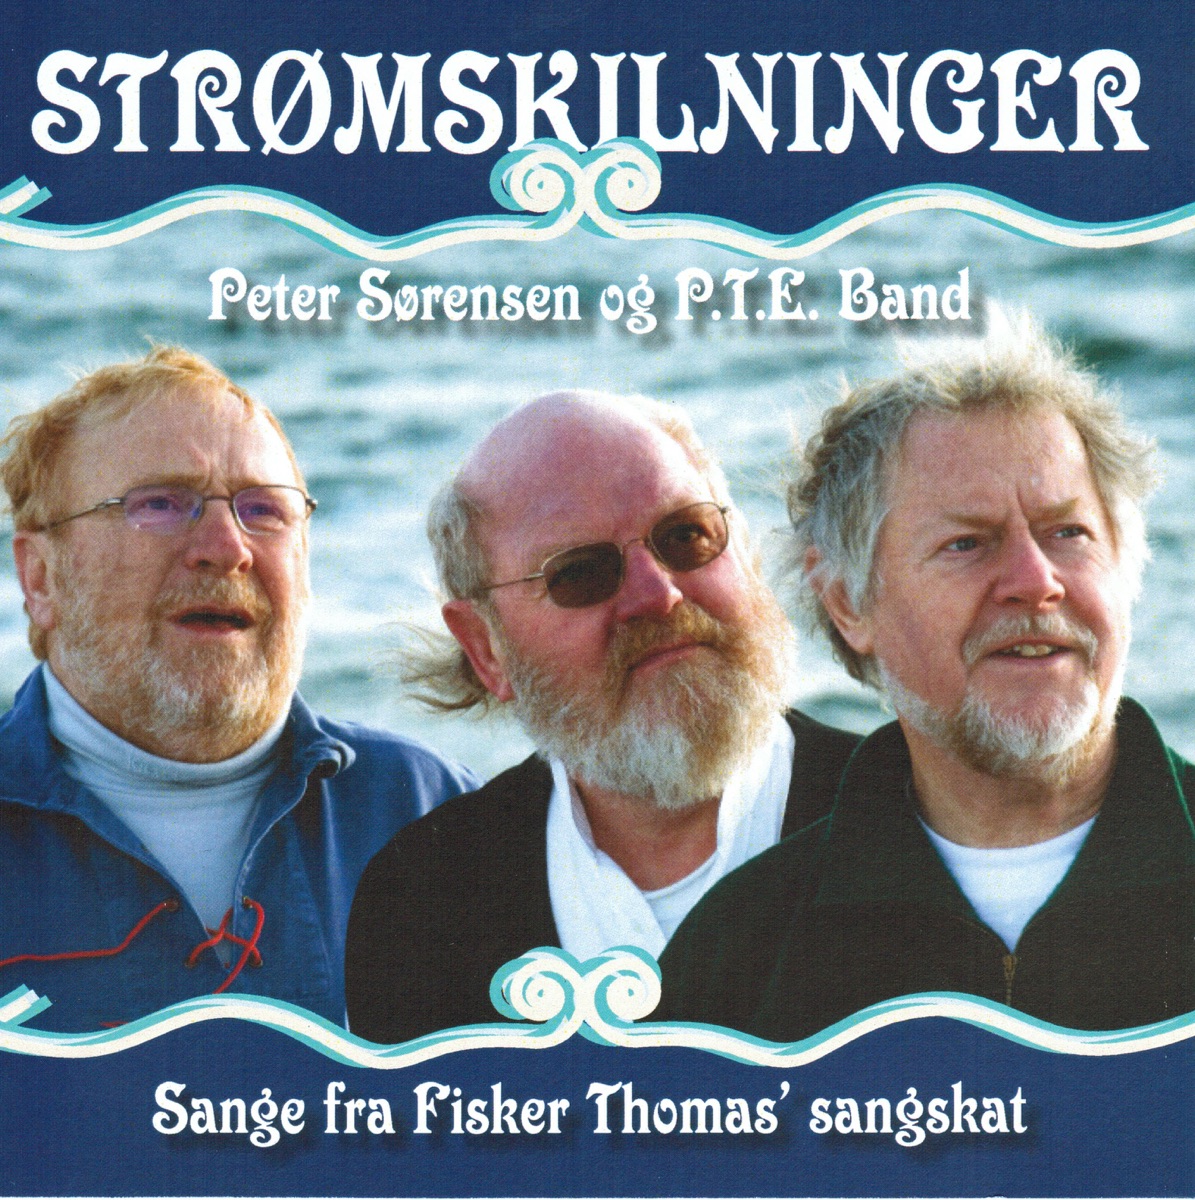 Strømskilninger - Album by Peter Sørensen og P.T.E. band - Apple Music